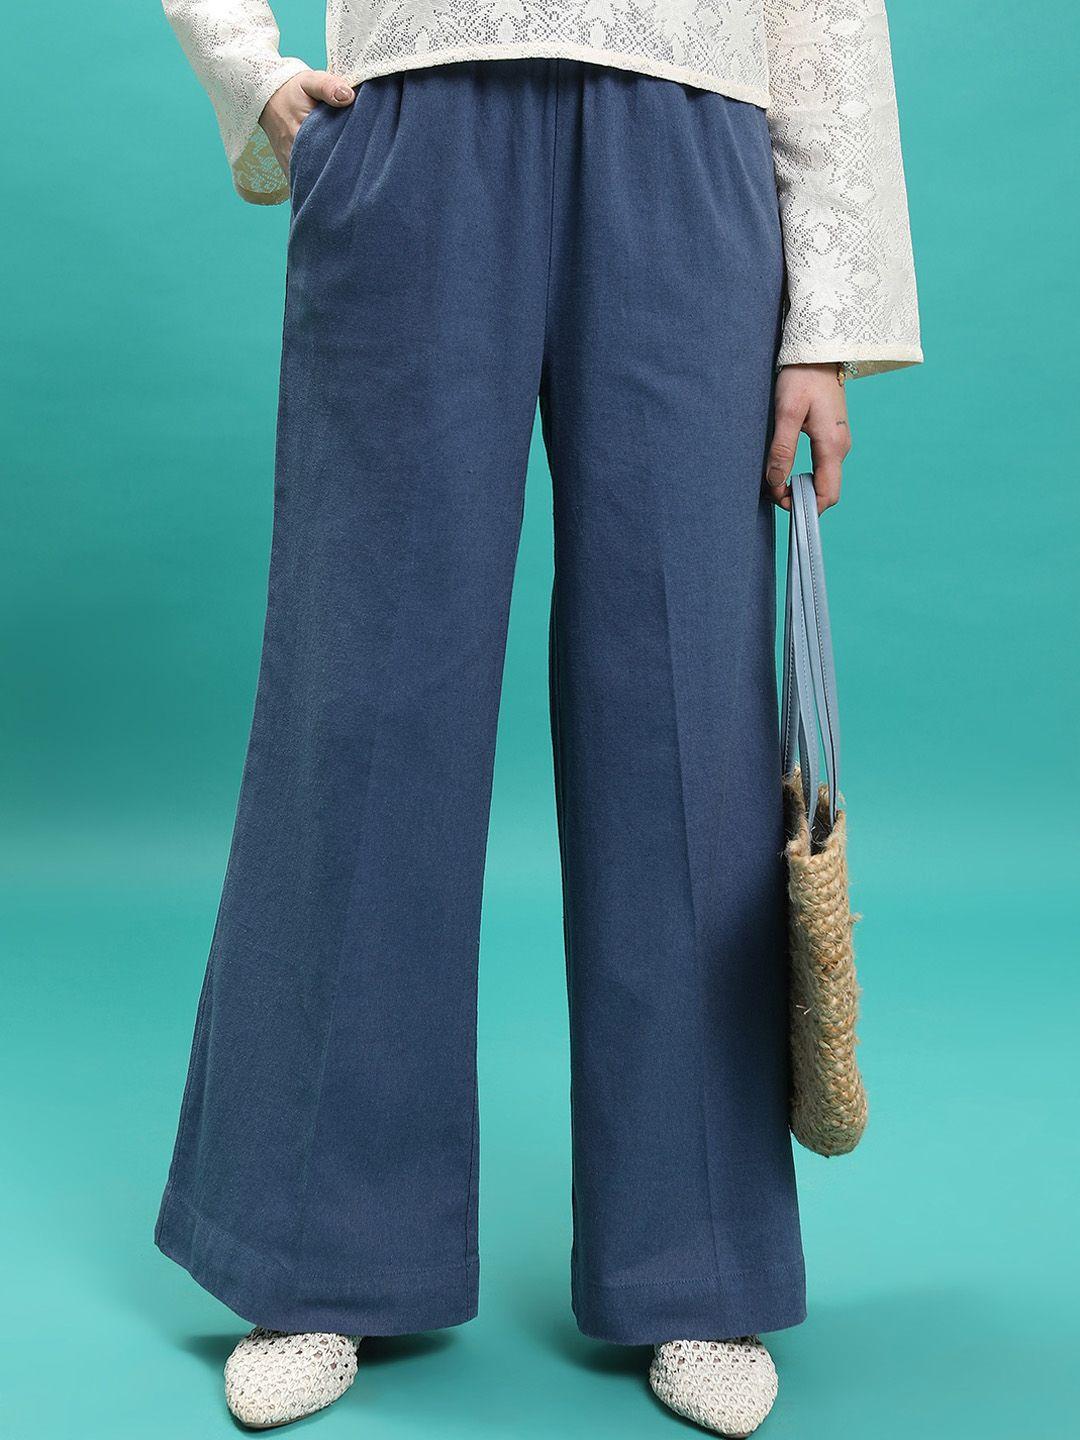 tokyo talkies women blue flared trousers